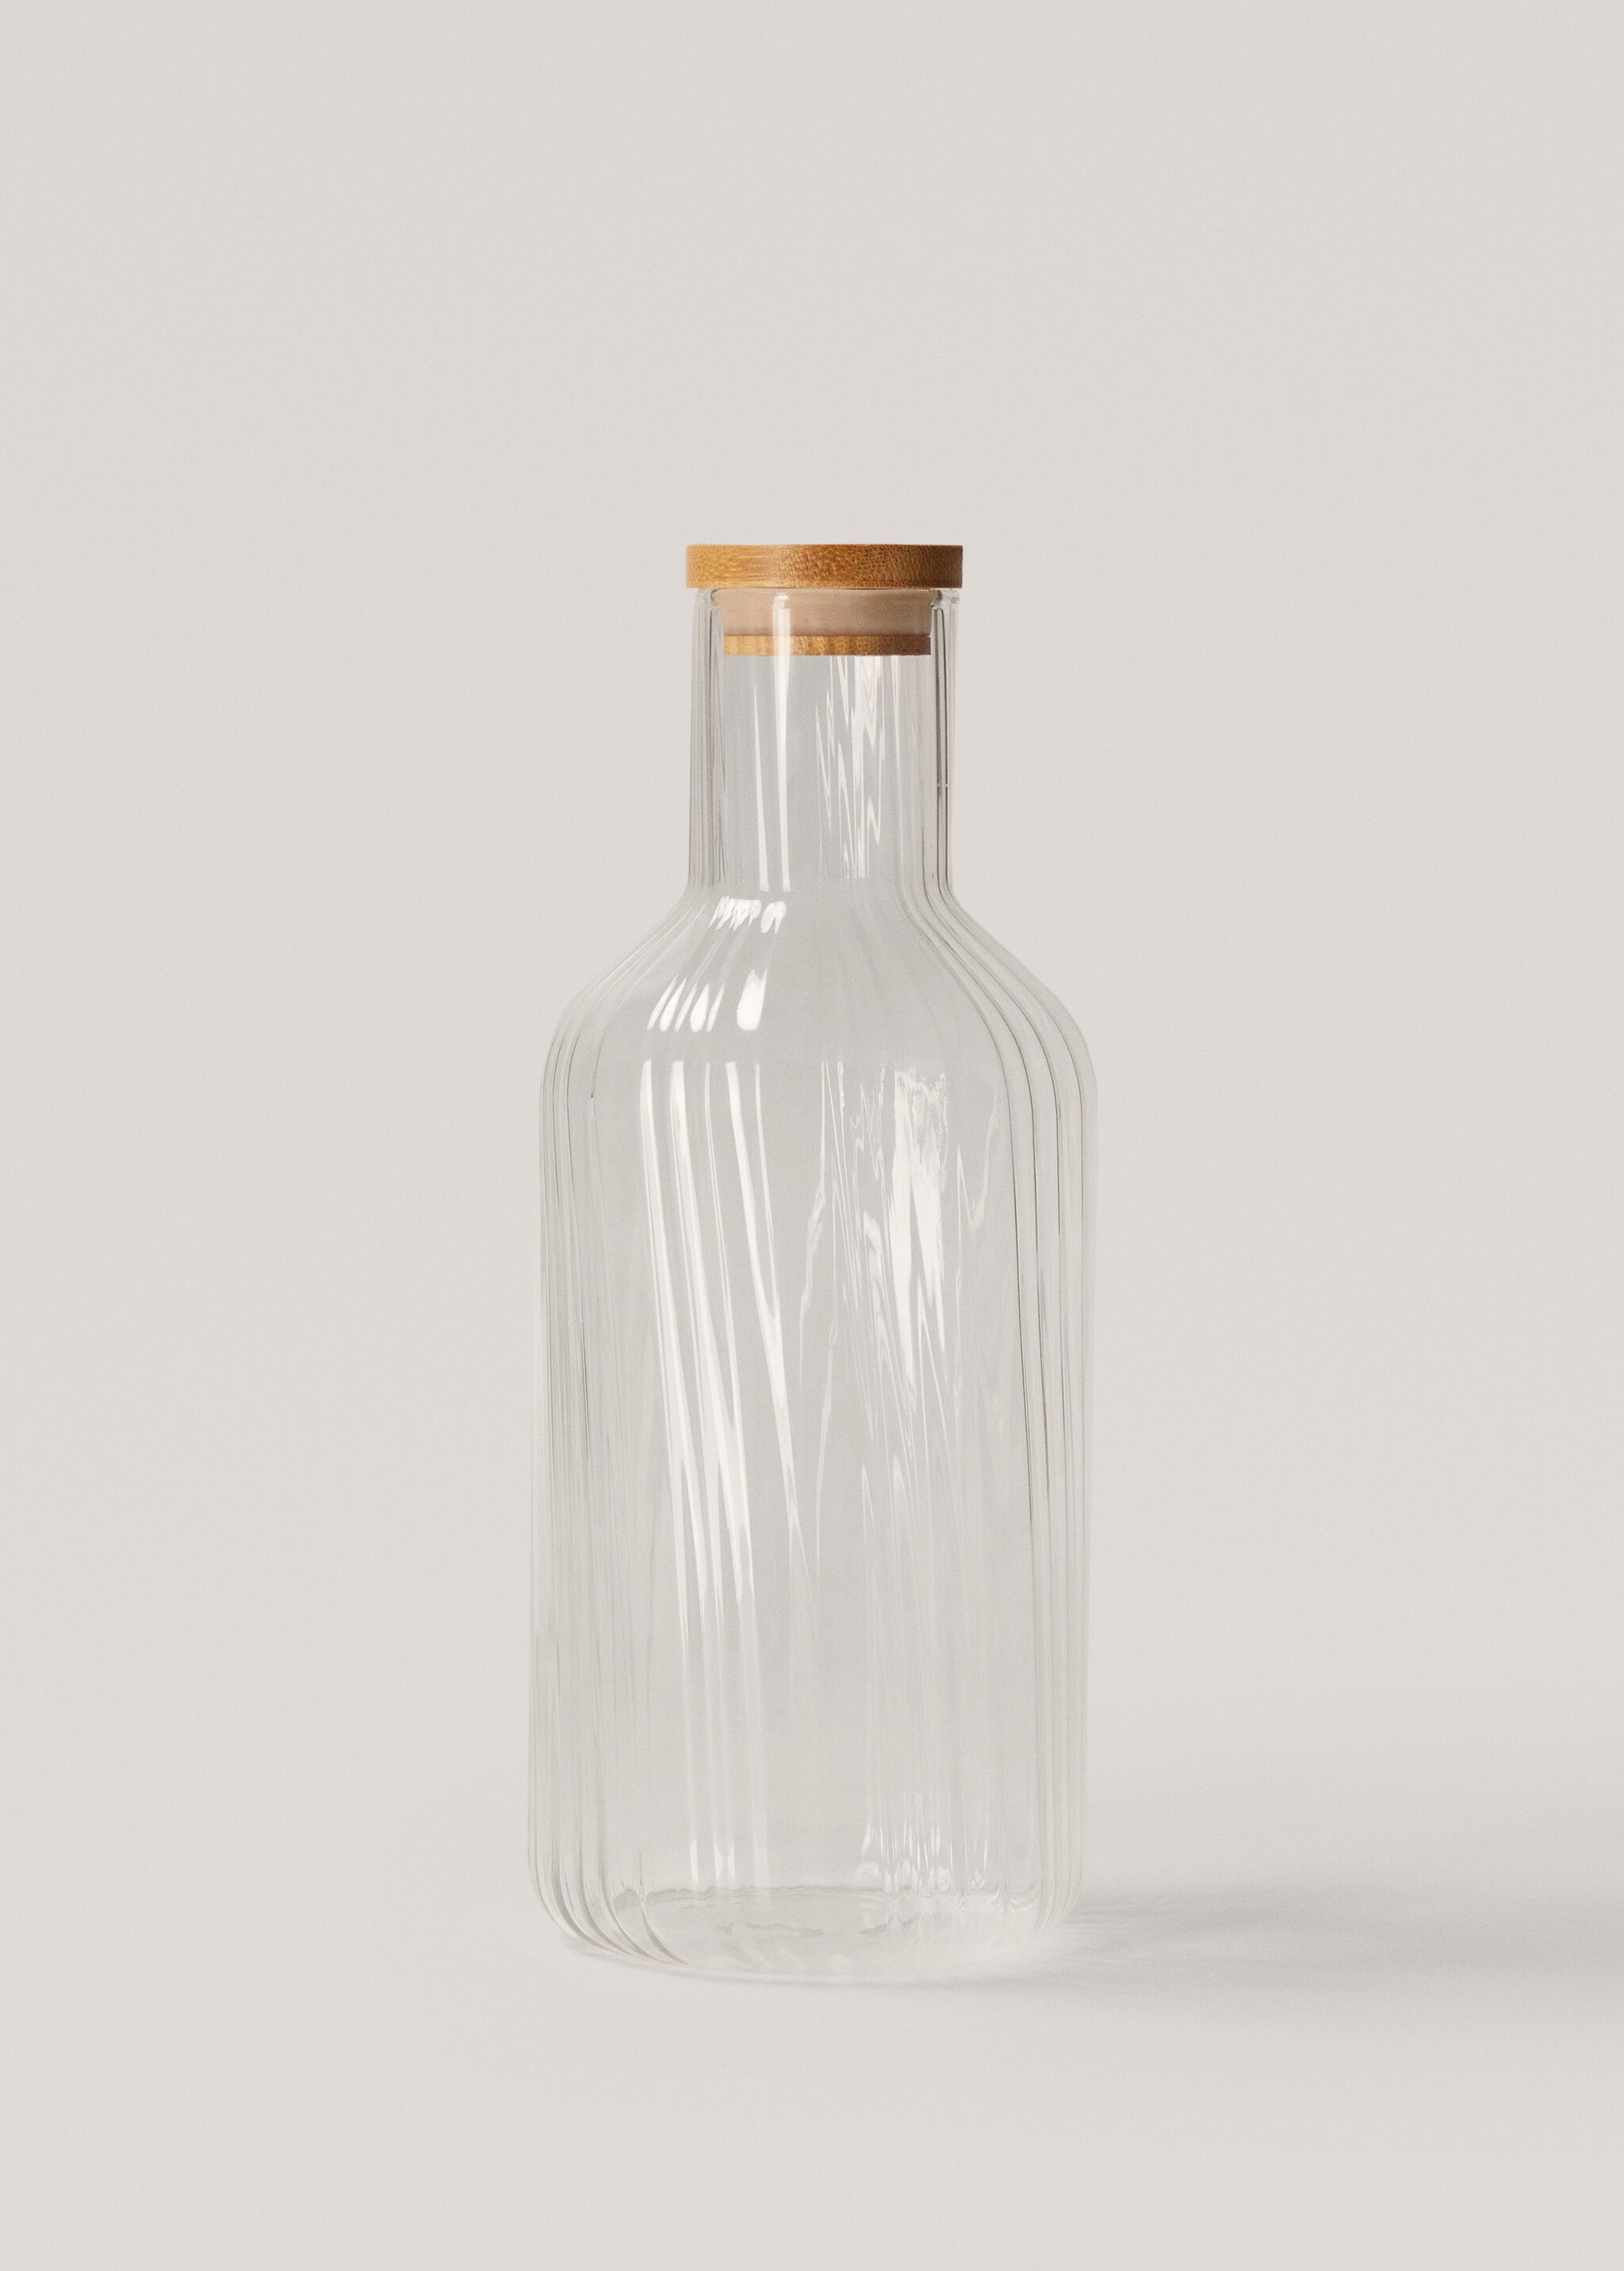 Sticlă borosilicată cu model în relief - Articol fără model